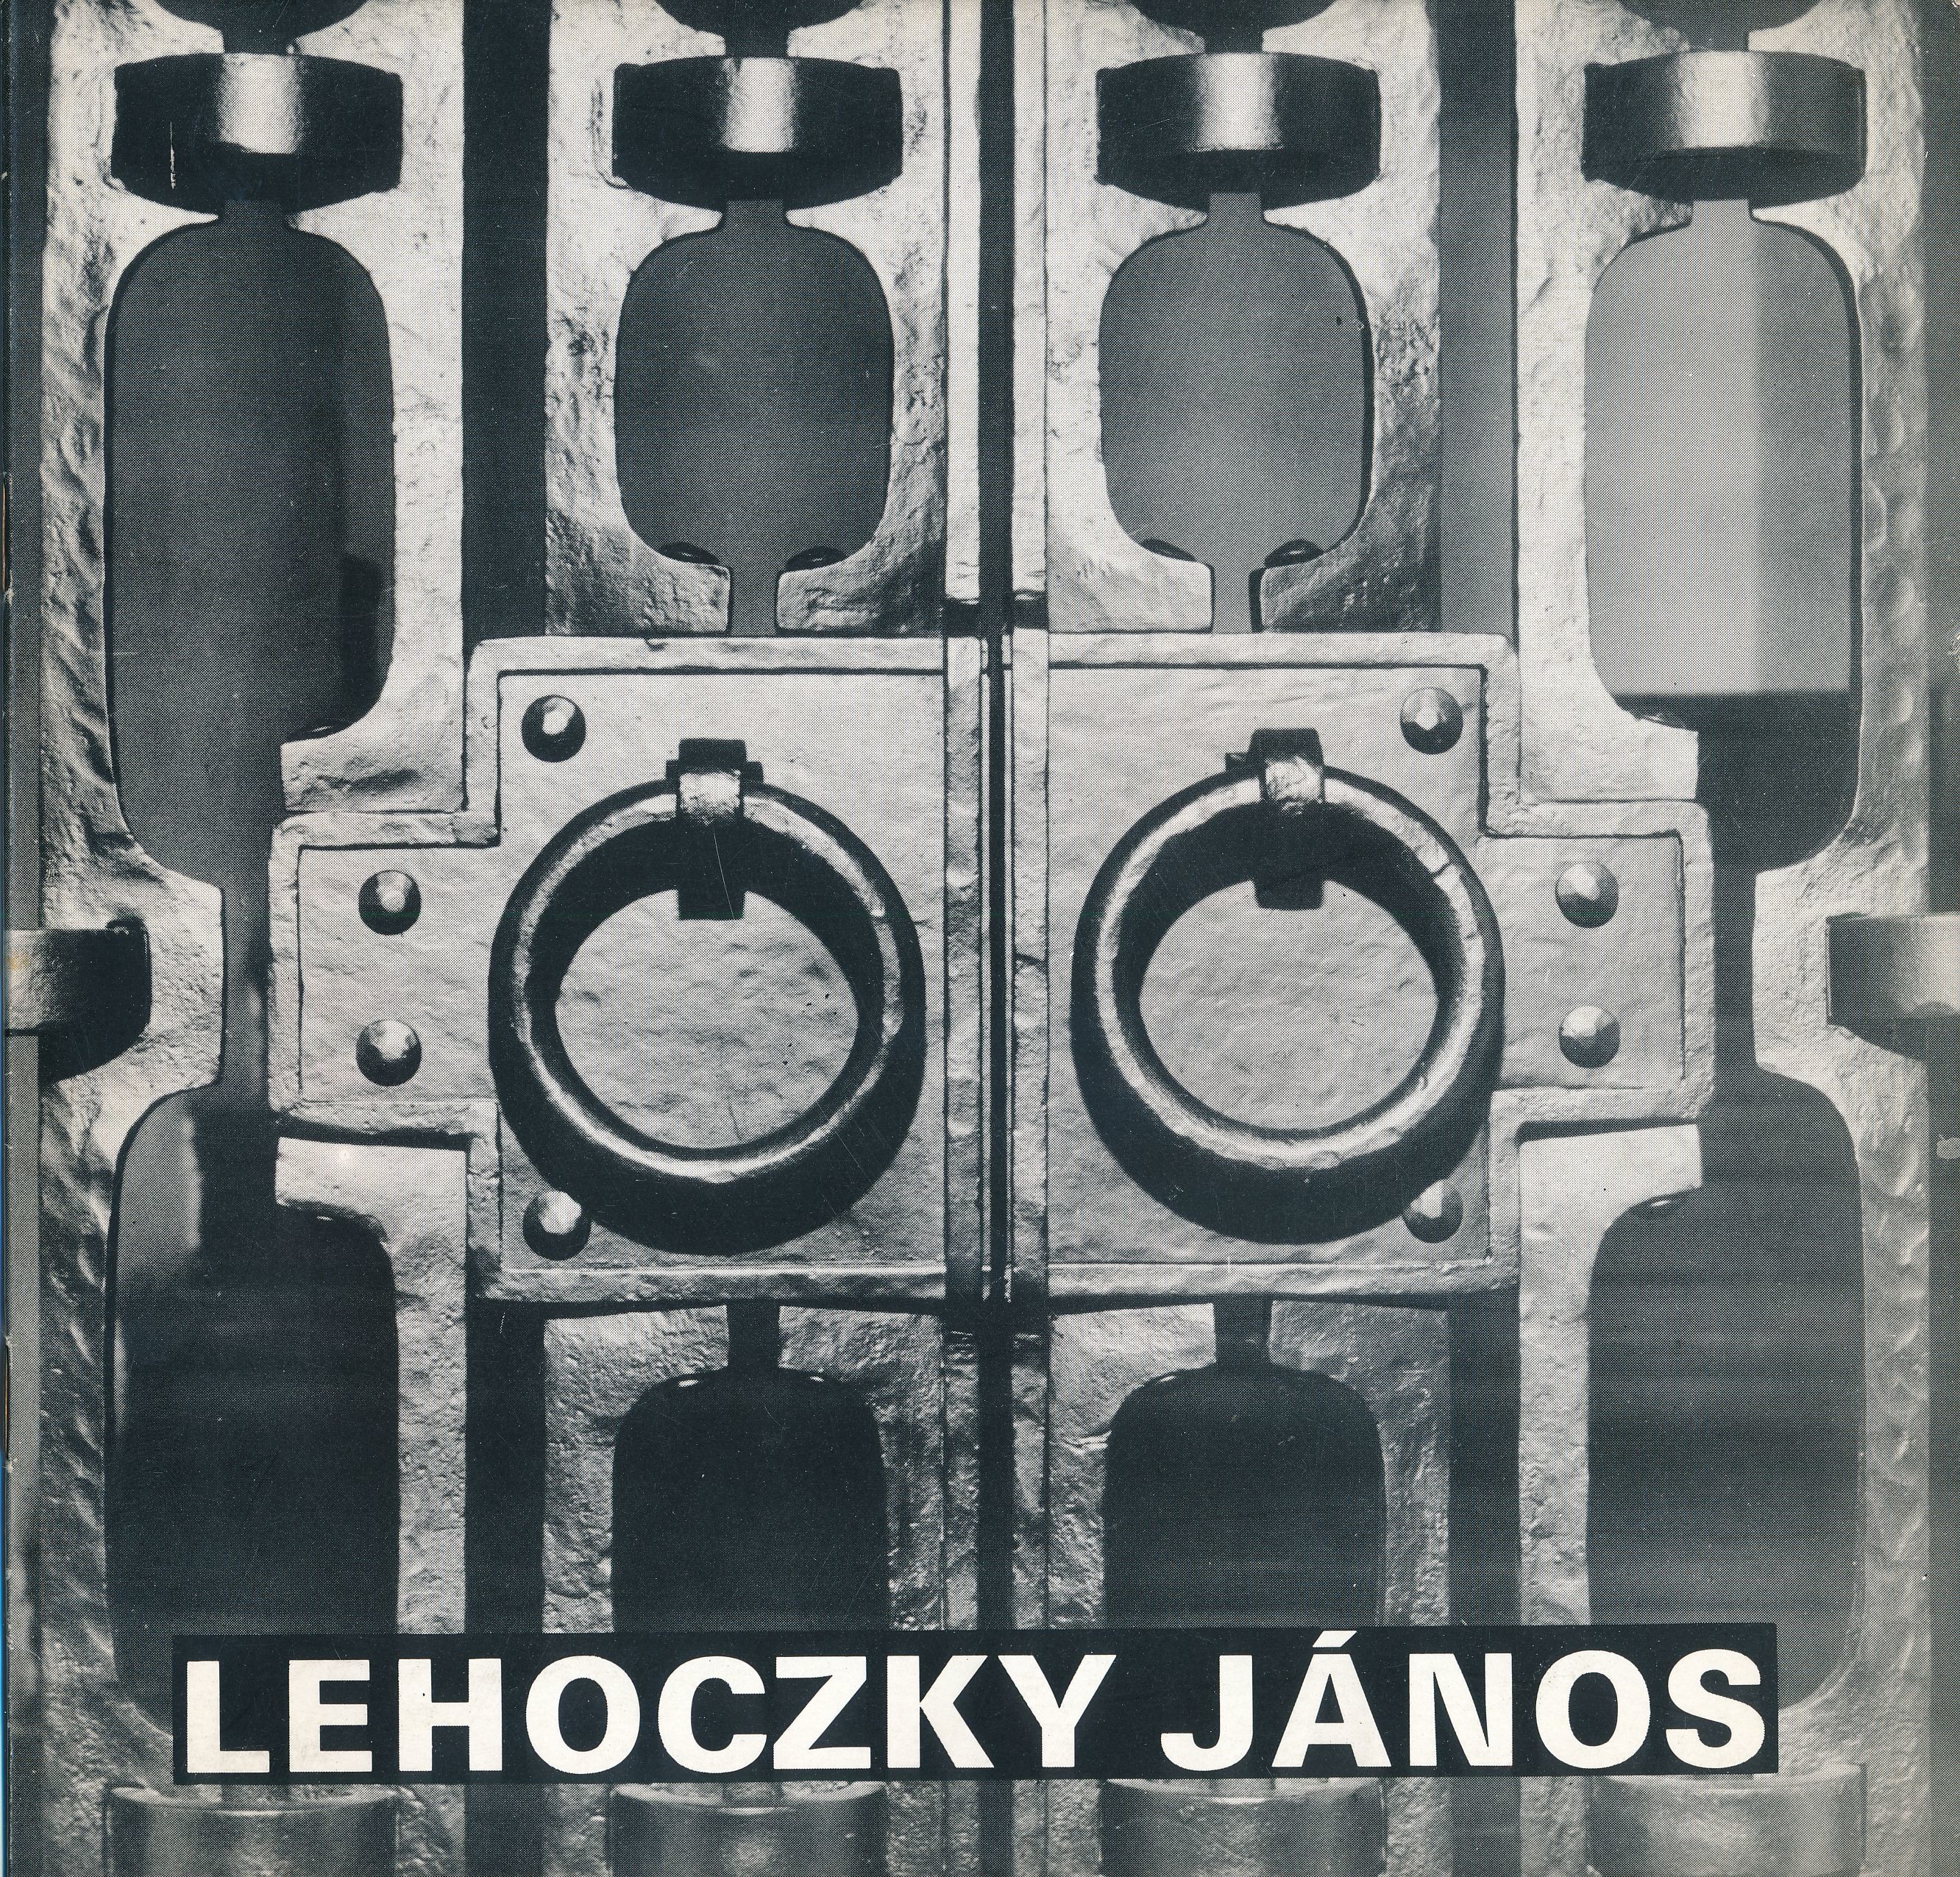 Lehoczky János kovács iparművész kiállítása Művésztelepi Galéria Szentendre 1976 február (Design DigiTár – Iparművészeti archívum CC BY-NC-SA)